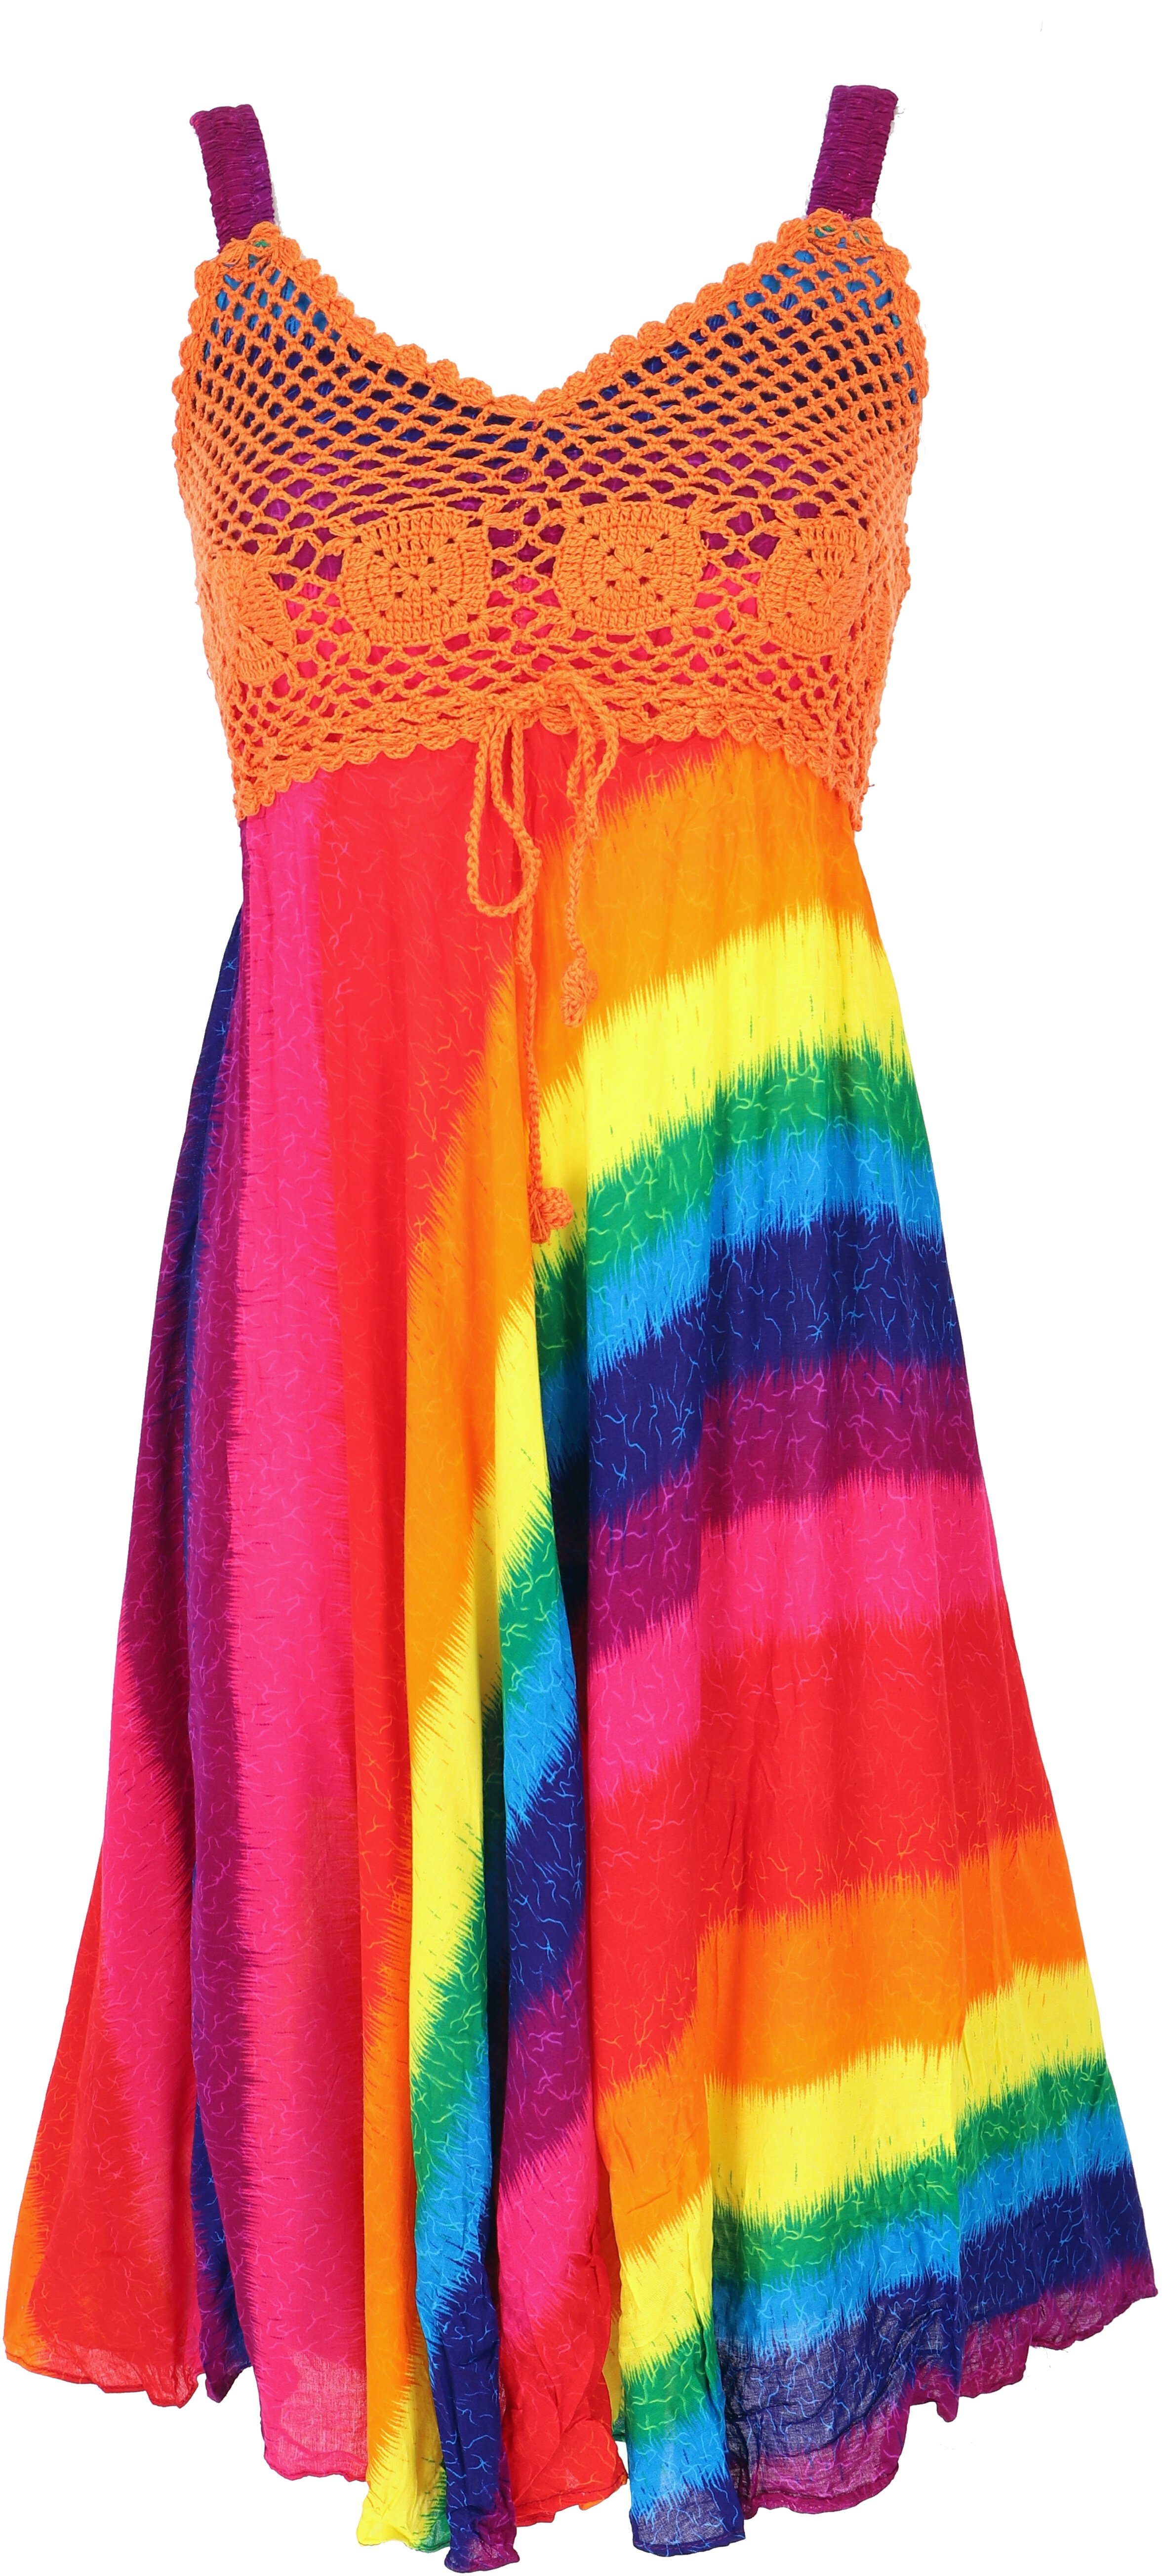 Bekleidung regenbogen/orange -.. Krinkelkleid Sommerkleid, Midikleid Minikleid, Guru-Shop Boho alternative